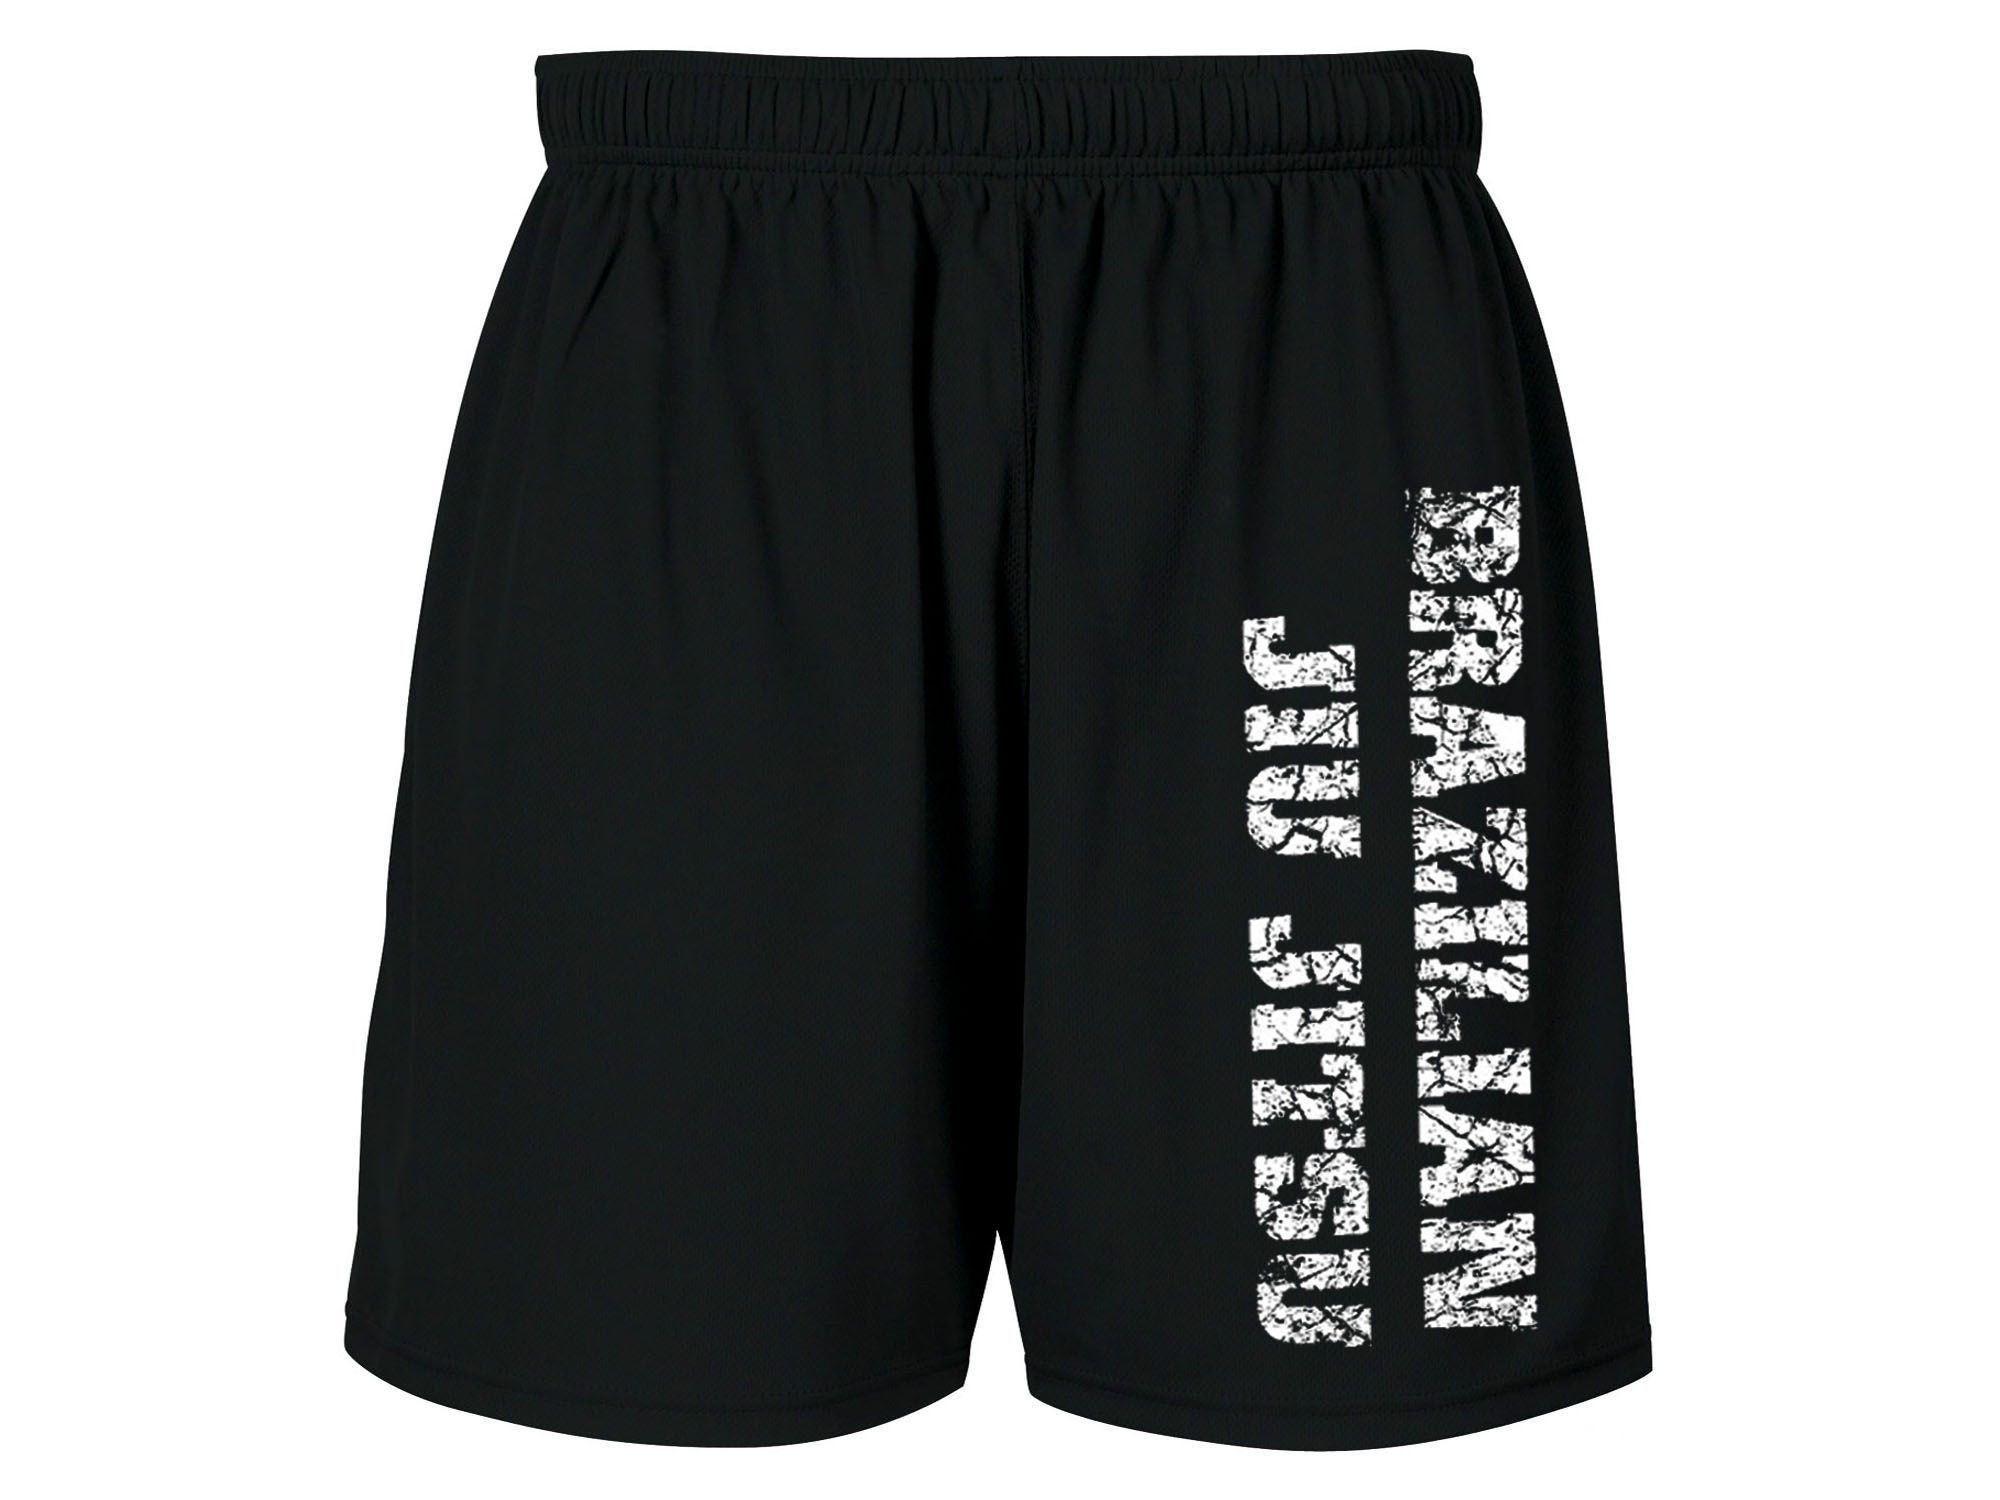 Brazilian Jiu Jitsu BJJ shorts sweat presist dri fit polyester